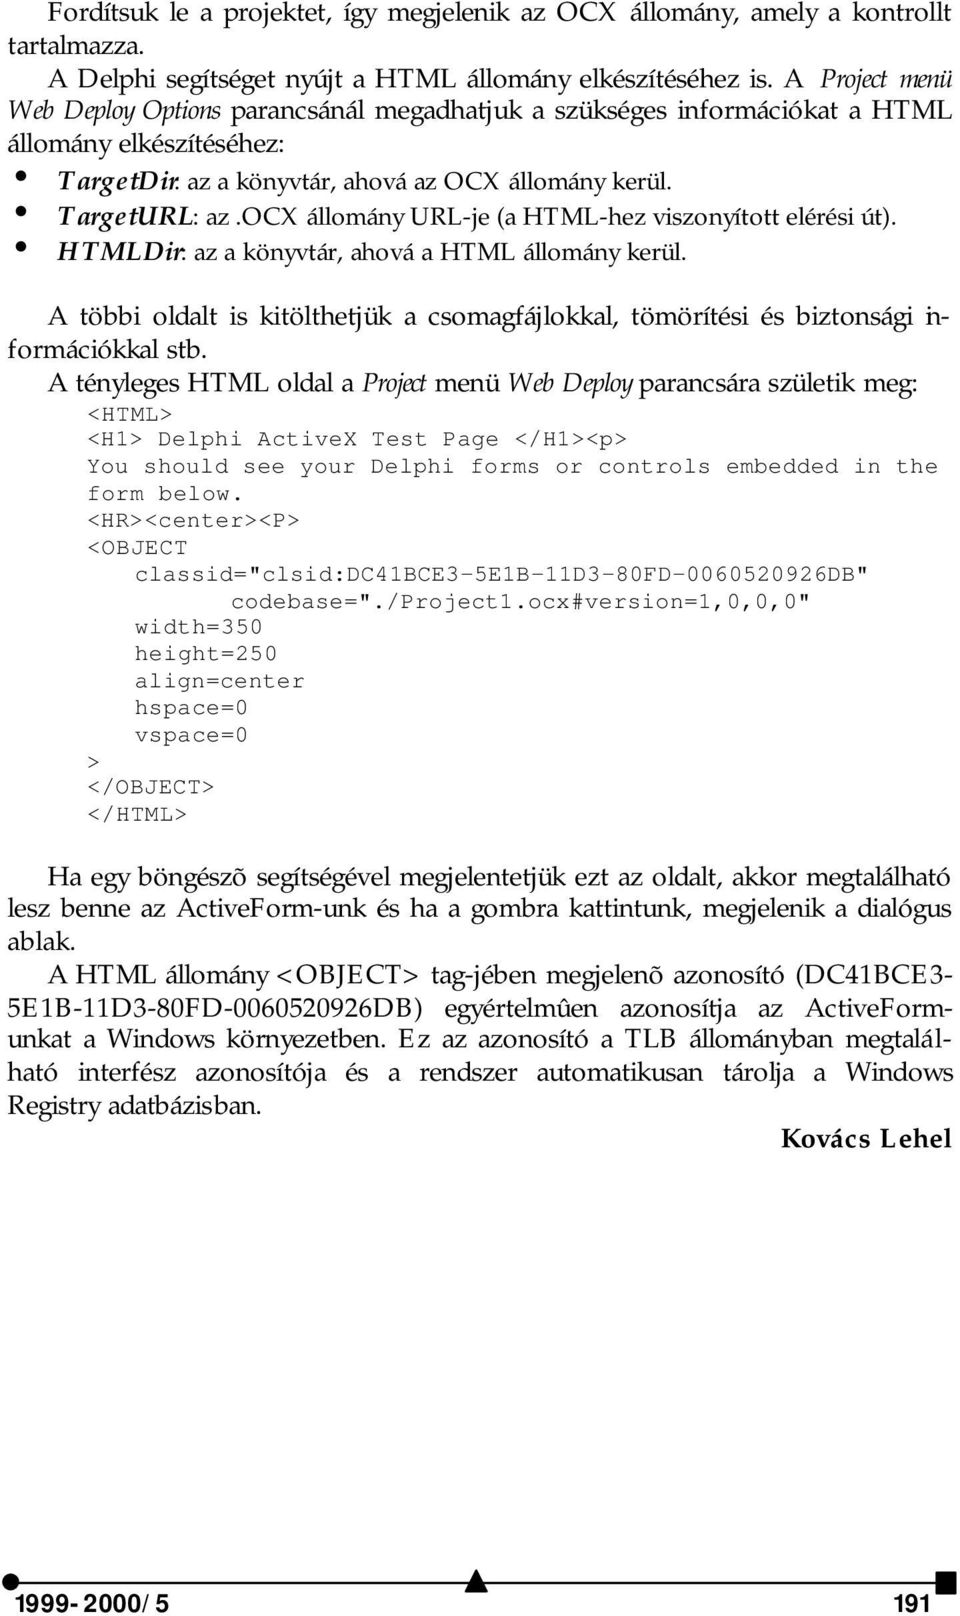 ocx állomány URL-je (a HTML-hez viszonyított elérési út). i HTMLDir: az a könyvtár, ahová a HTML állomány kerül.